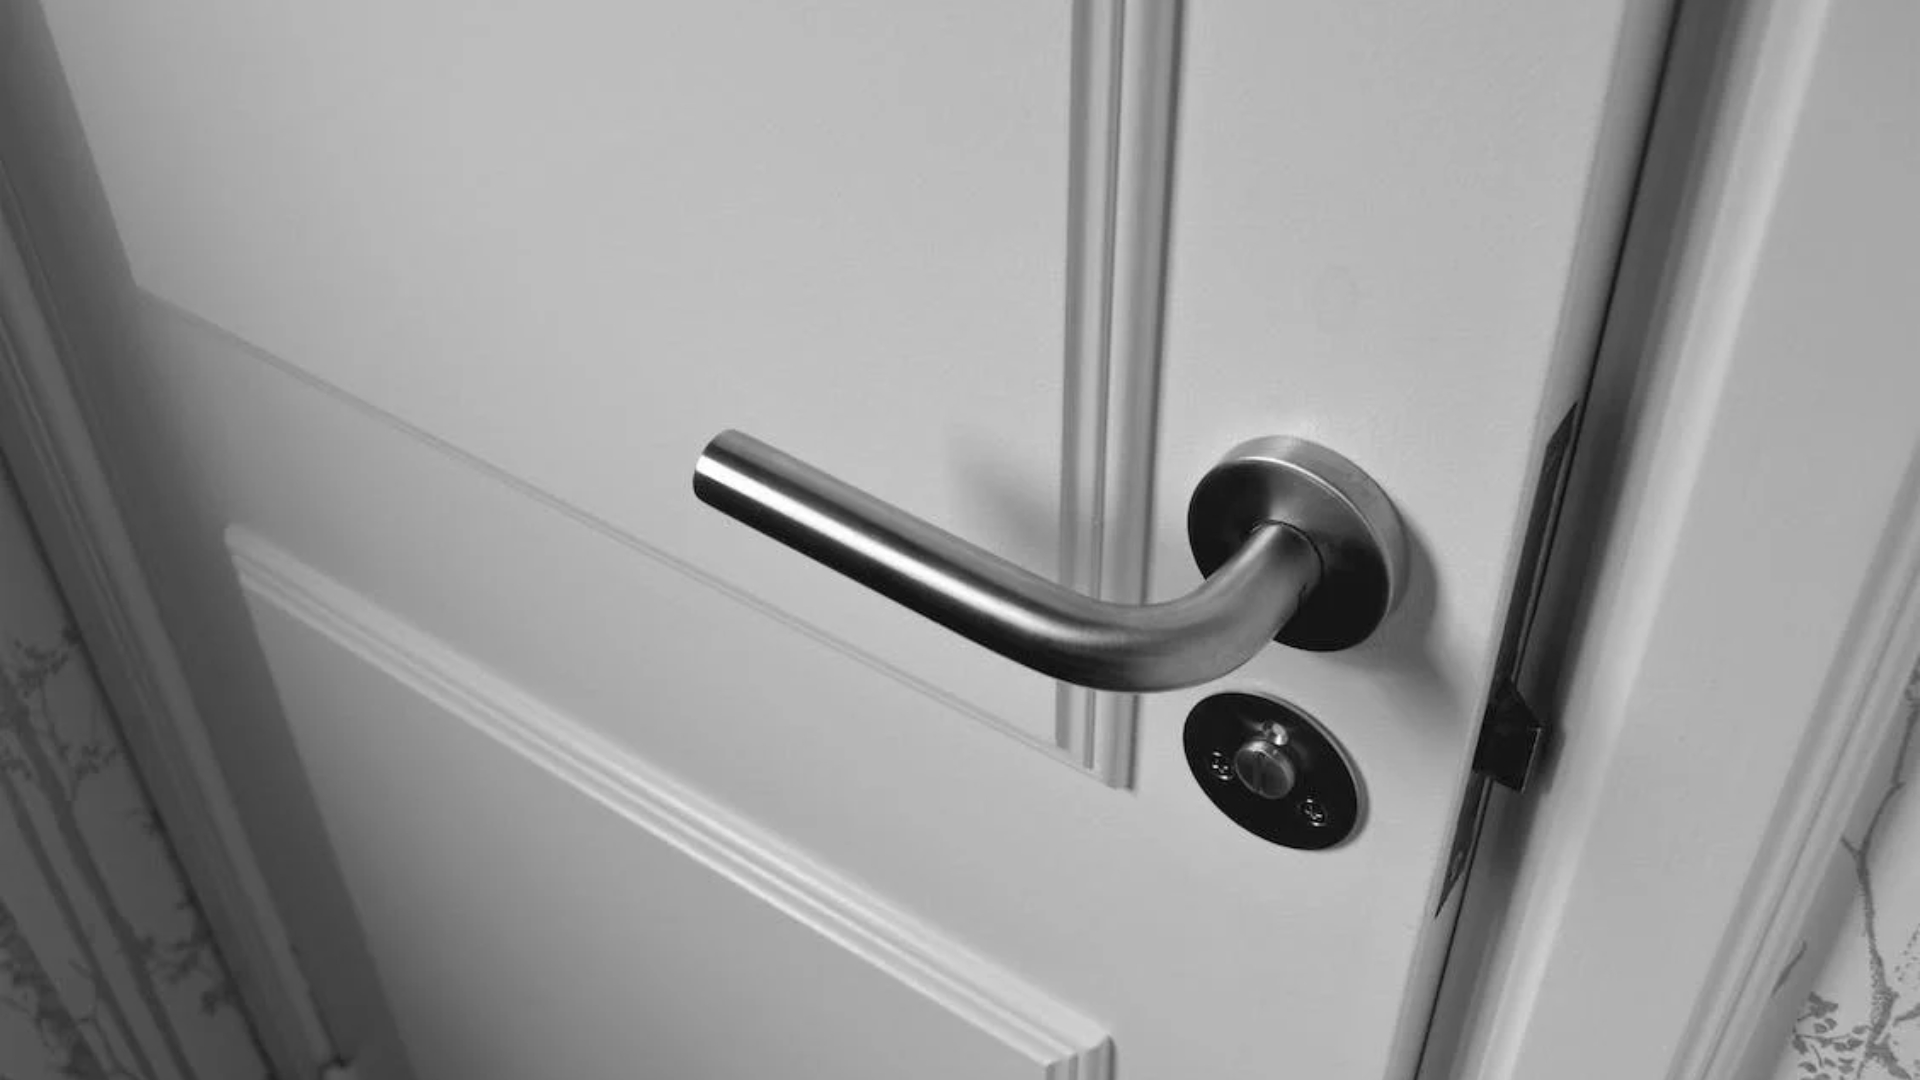 A door lever handle on an indoor door